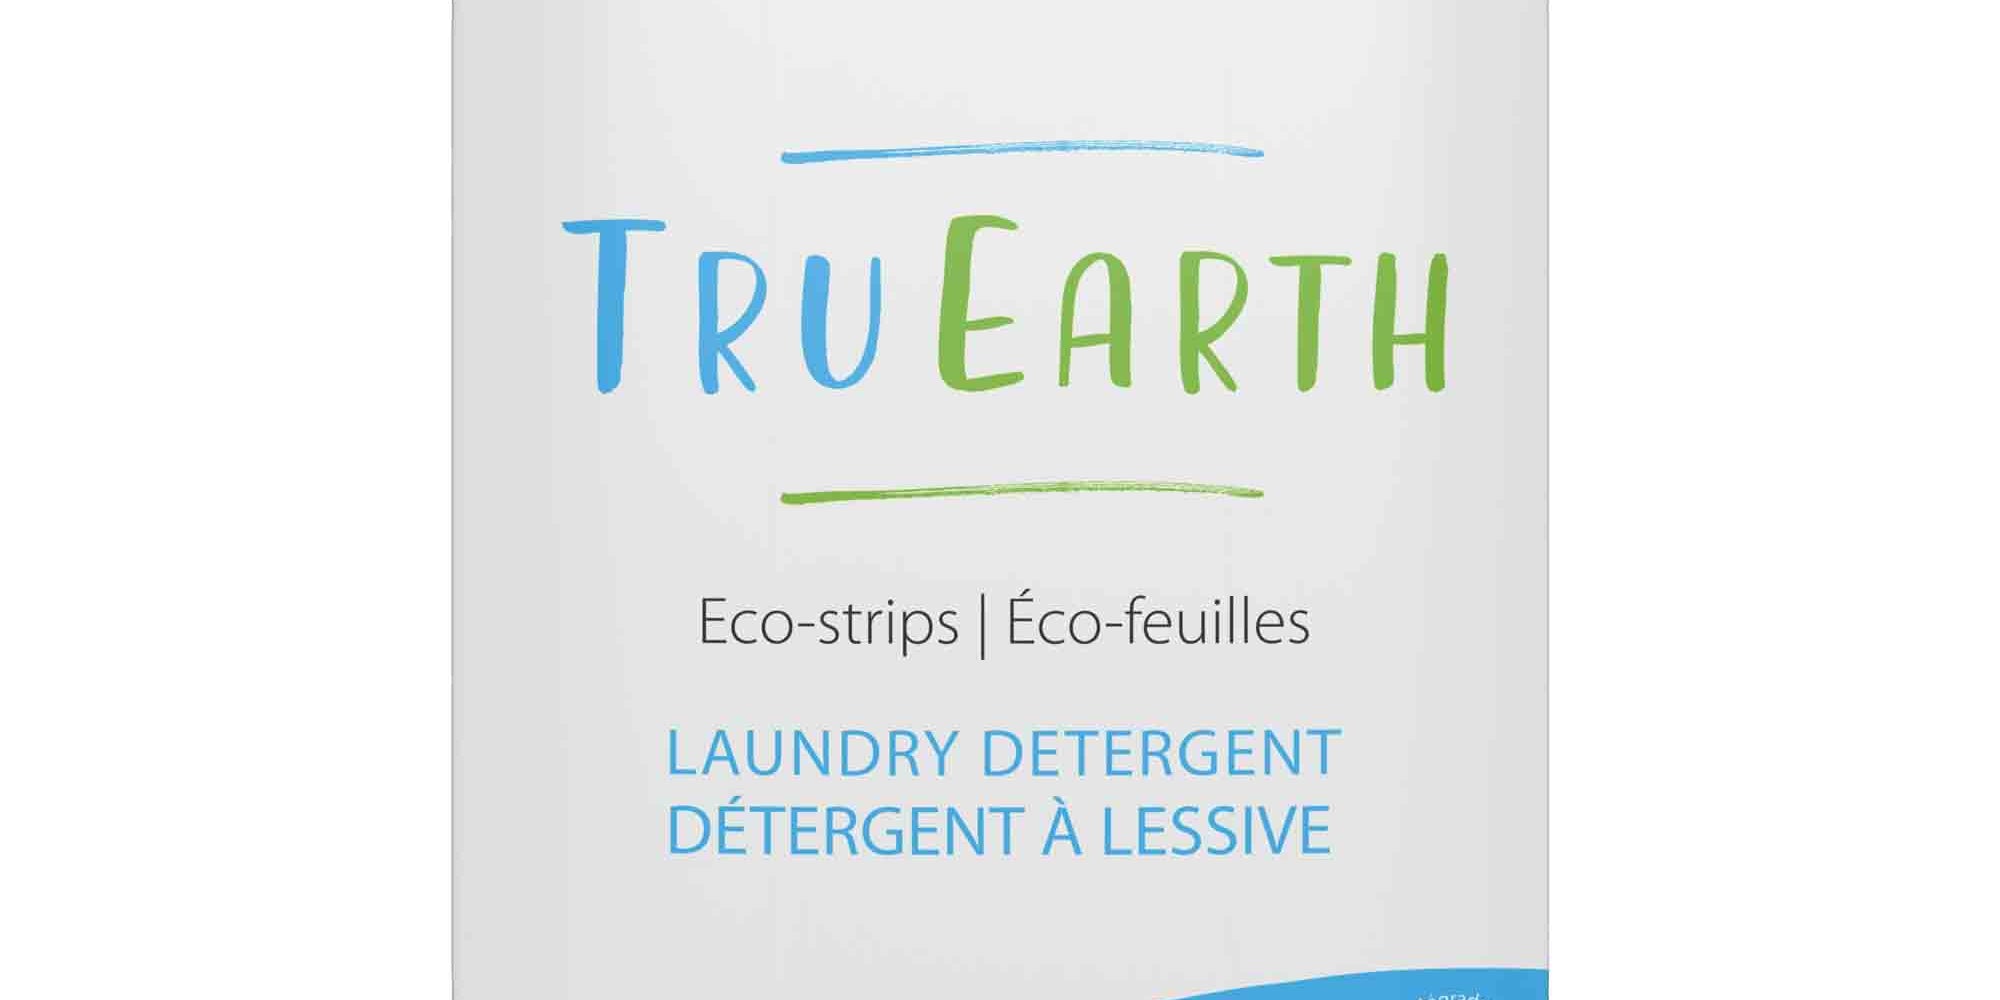 Feuilles de détergent à lessive Tru Earth Laundry Detergent Tru Earth Linge frais 